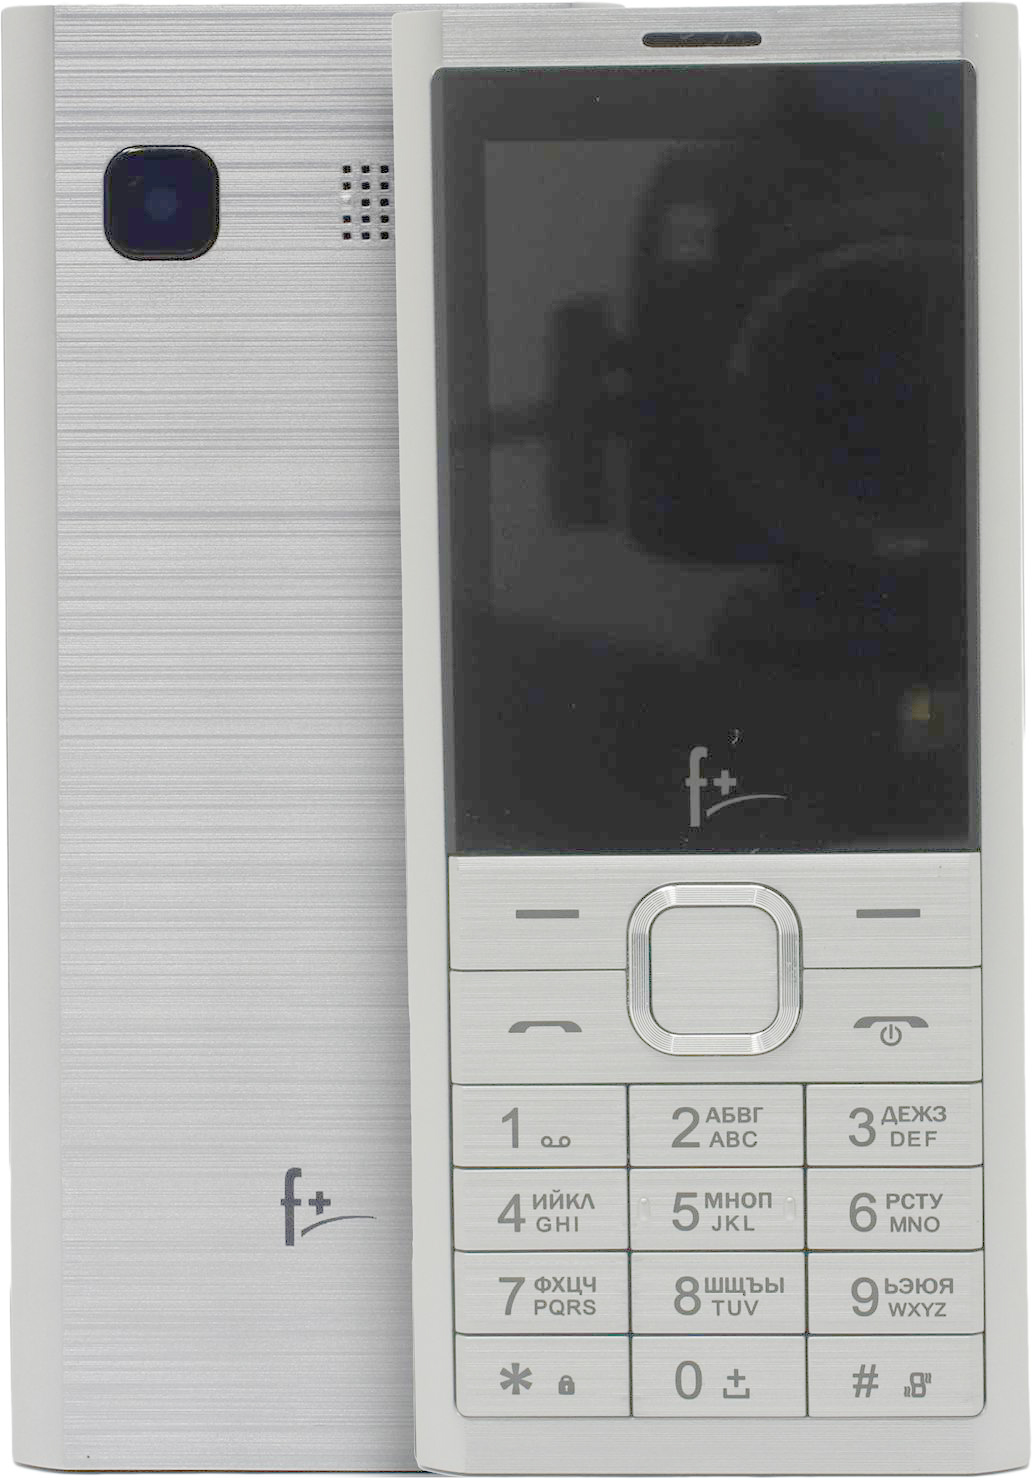 Мобильные телефон F+ B241 SILVER (2 SIM) кнопочный телефон f b241 silver